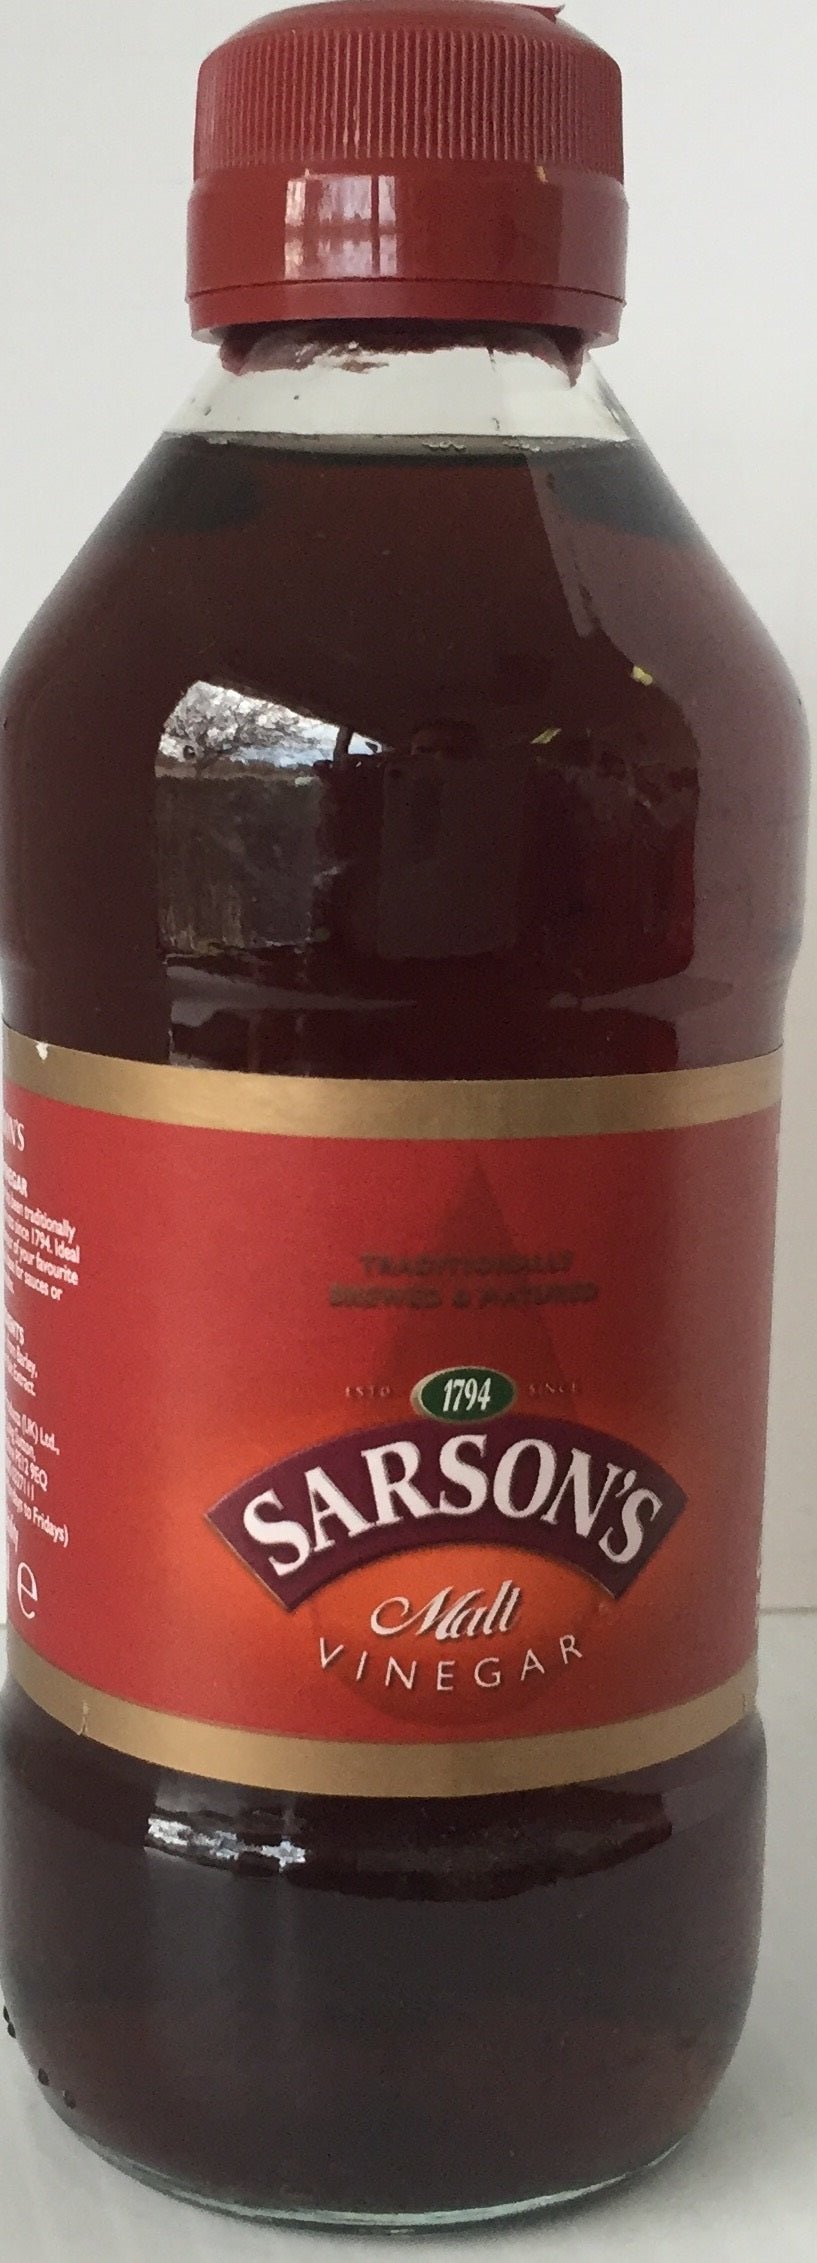 Sarsons Malt Vinegar bottle 250ml x 12 - britishaisles